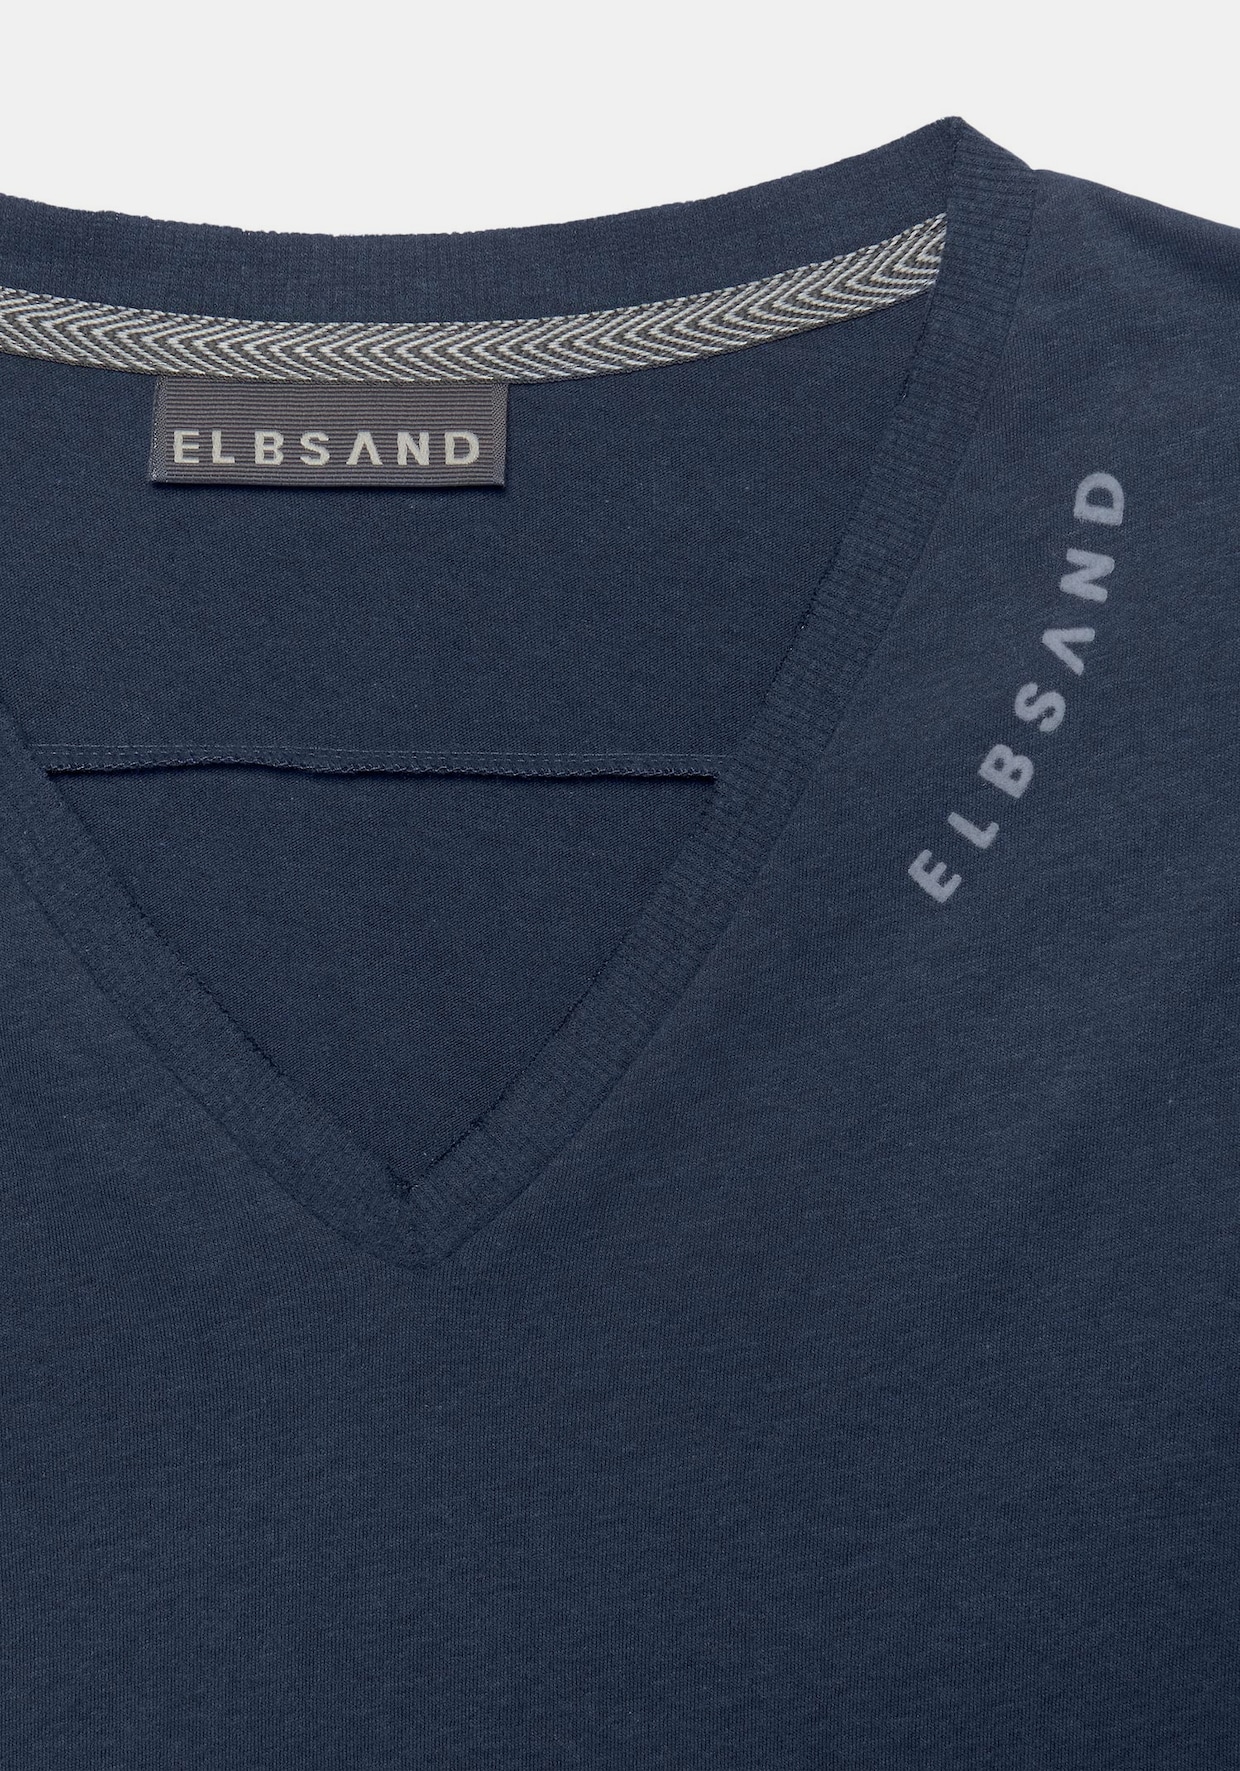 Elbsand V-Shirt - marine-meliert